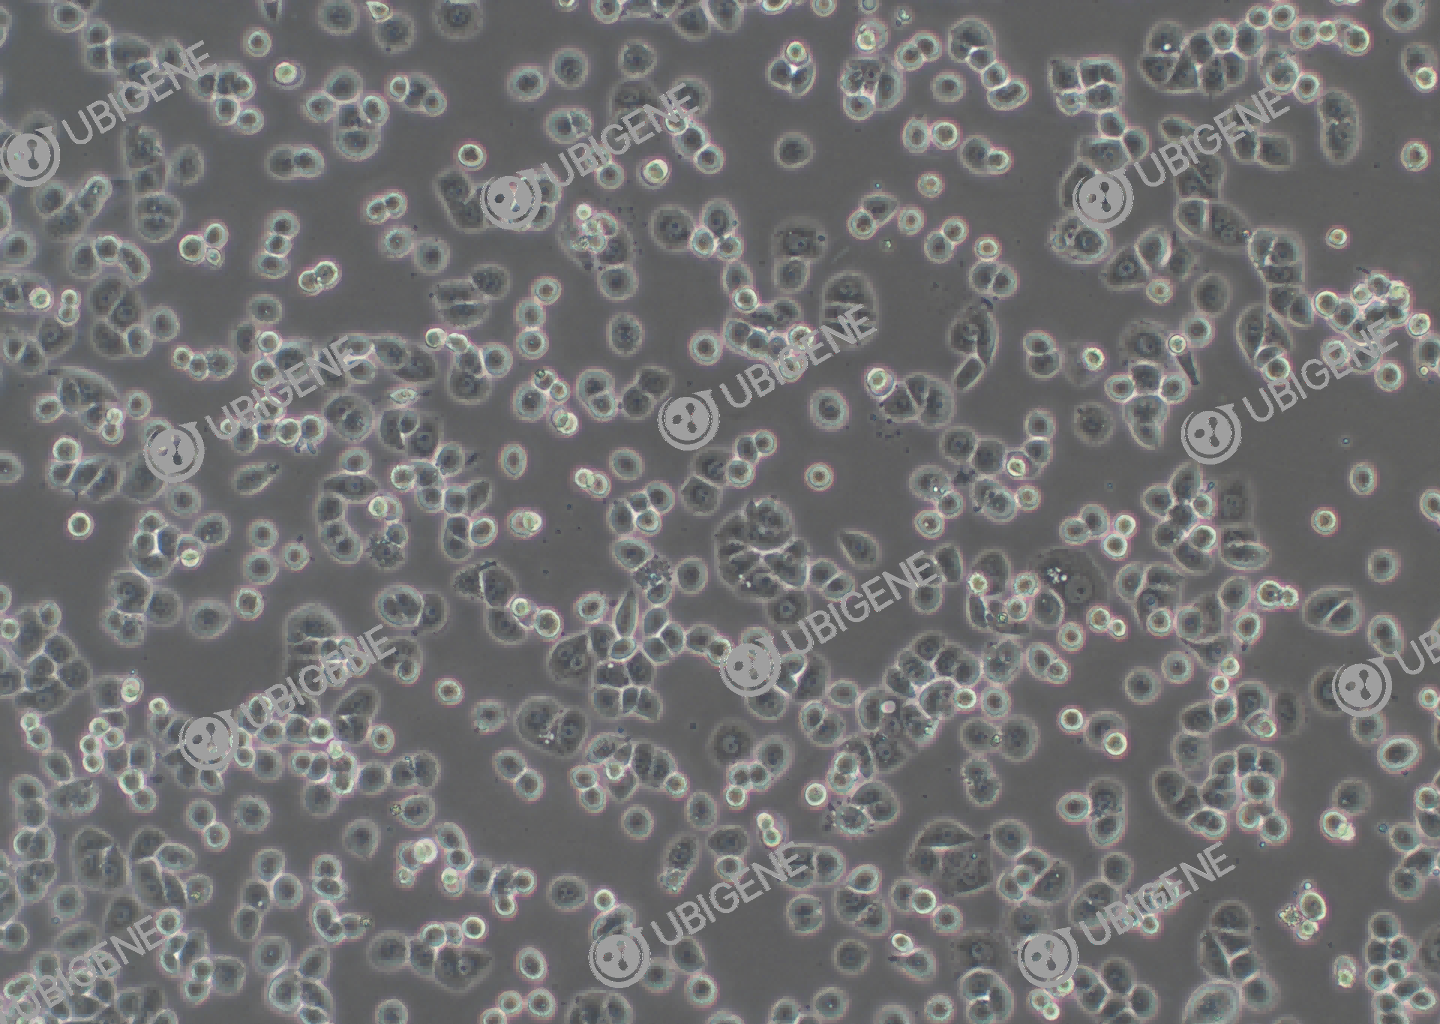 人乳腺腺癌细胞(MDA-MB-468)细胞形态培养图